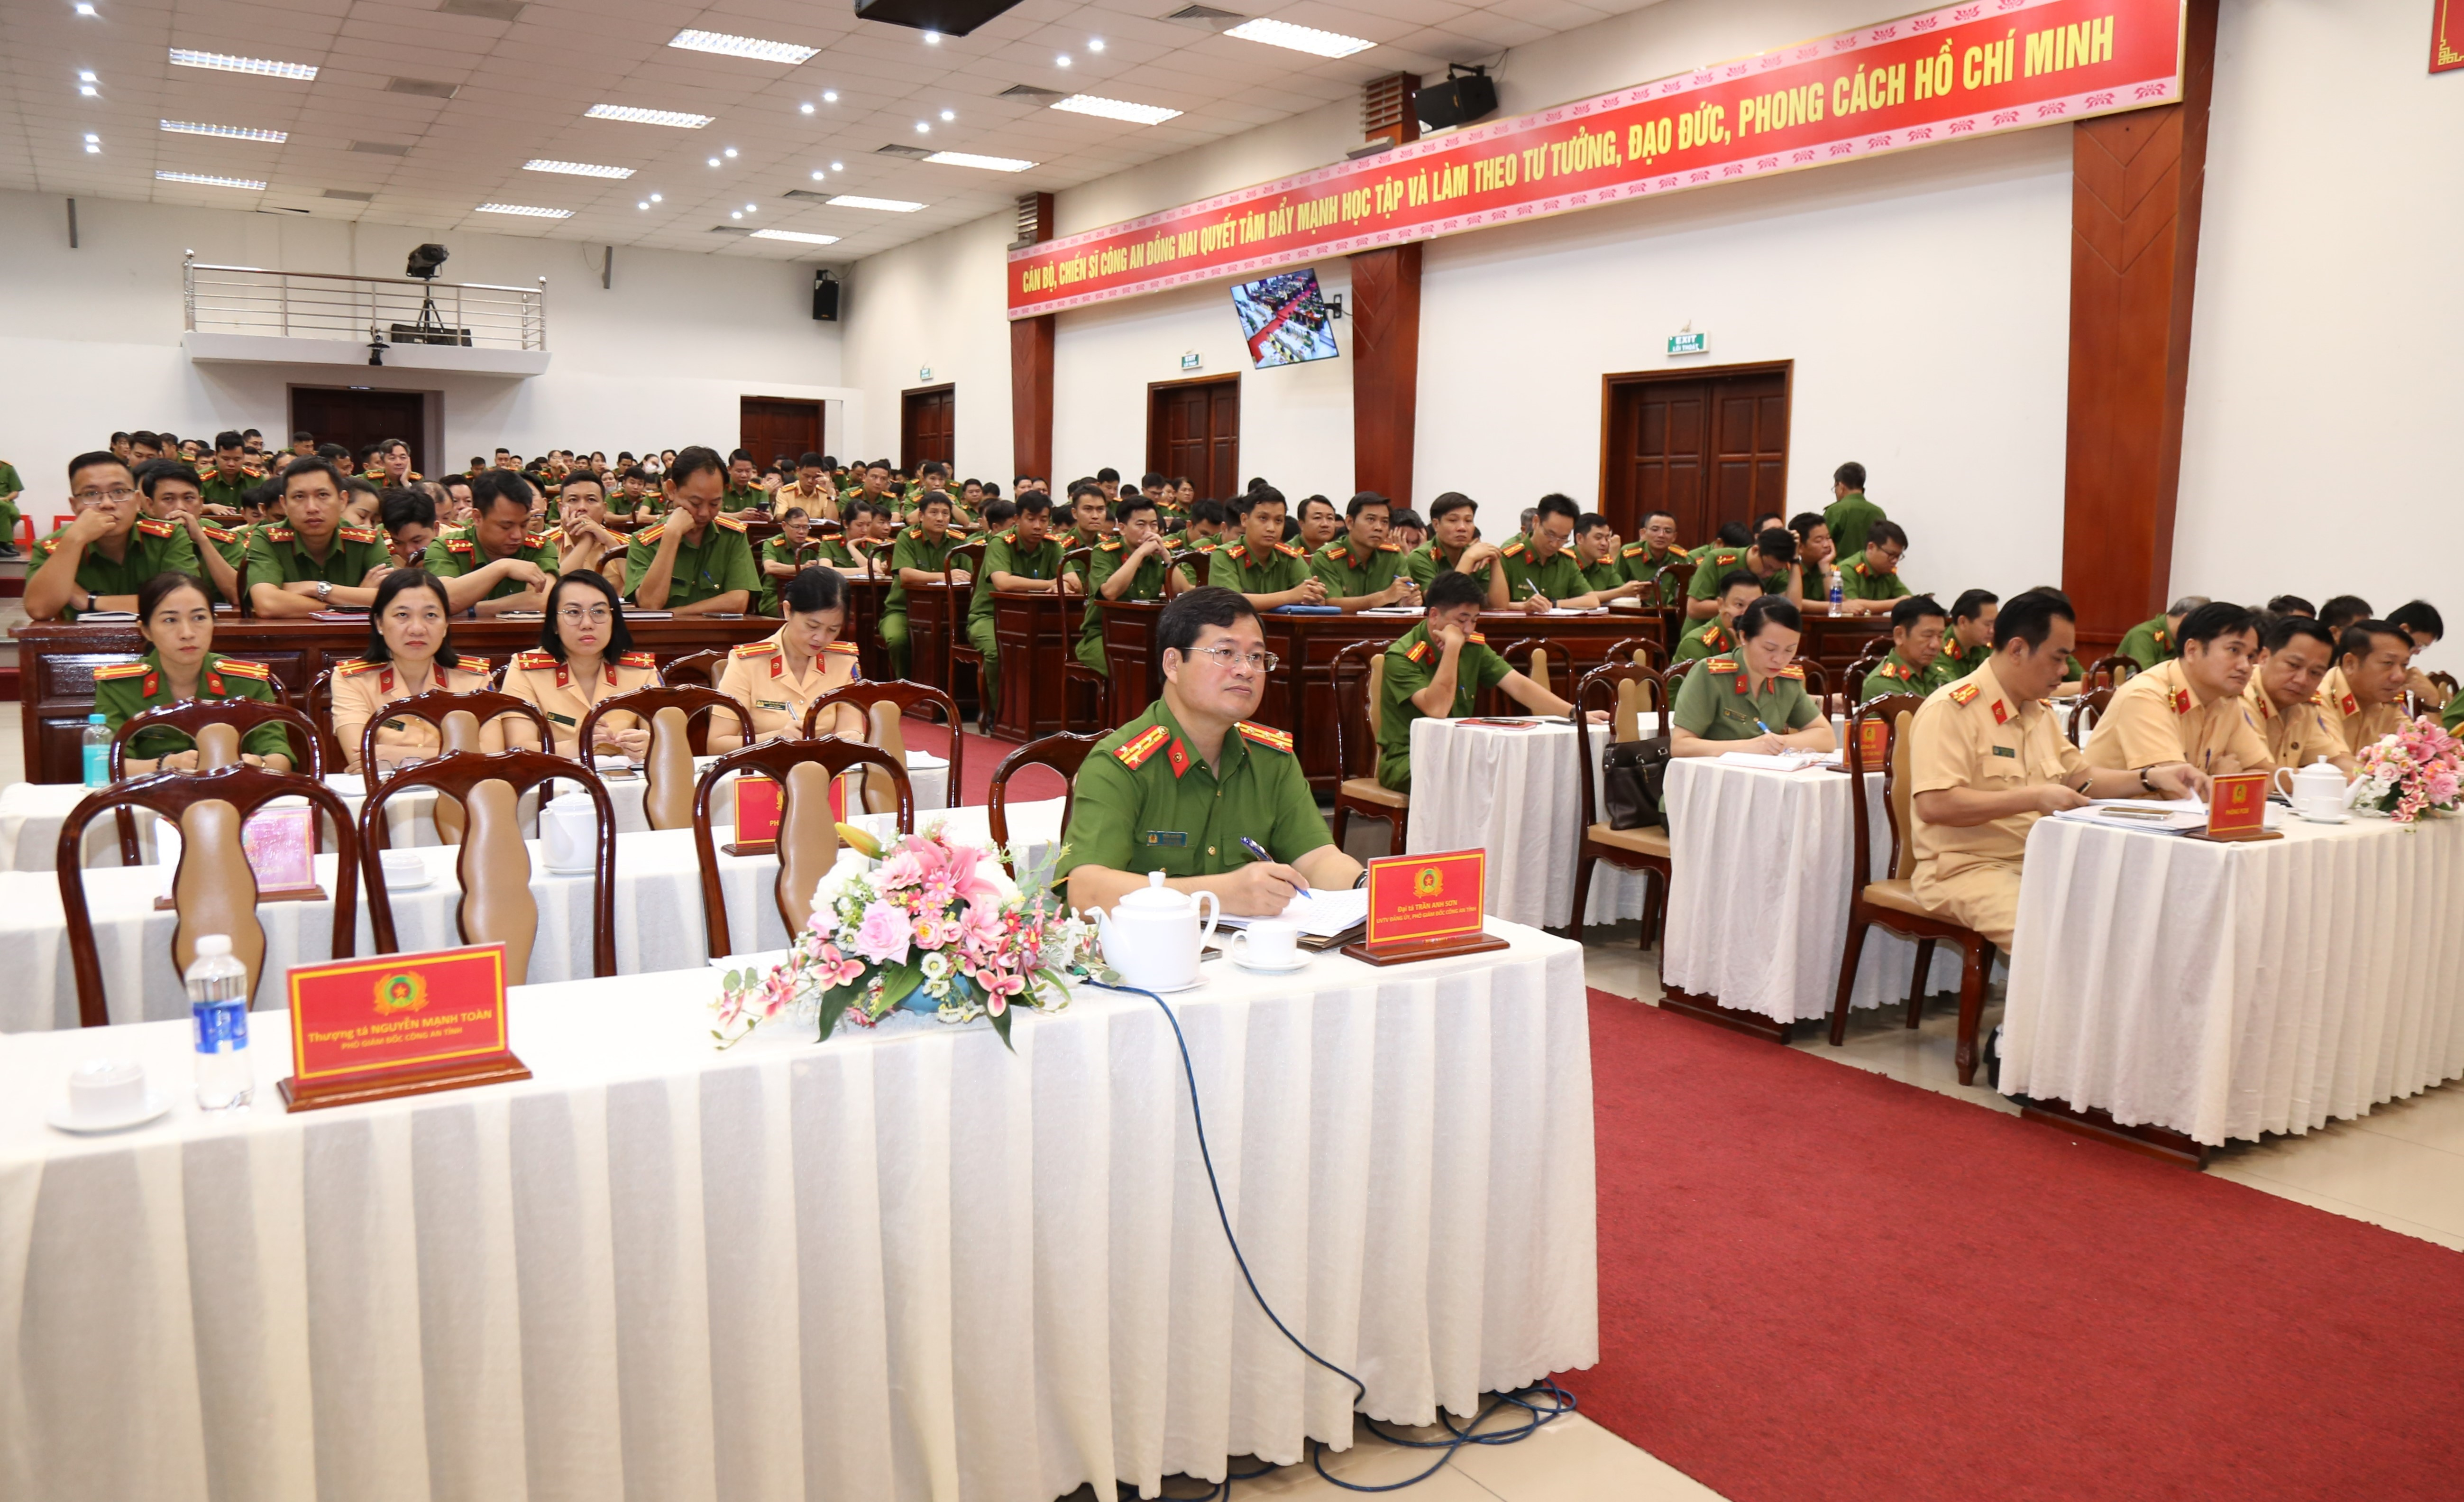 Lãnh đạo và các cán bộ Cảnh sát giao thông tham dự hội nghị trực tuyến tại điểm cầu Đồng Nai.